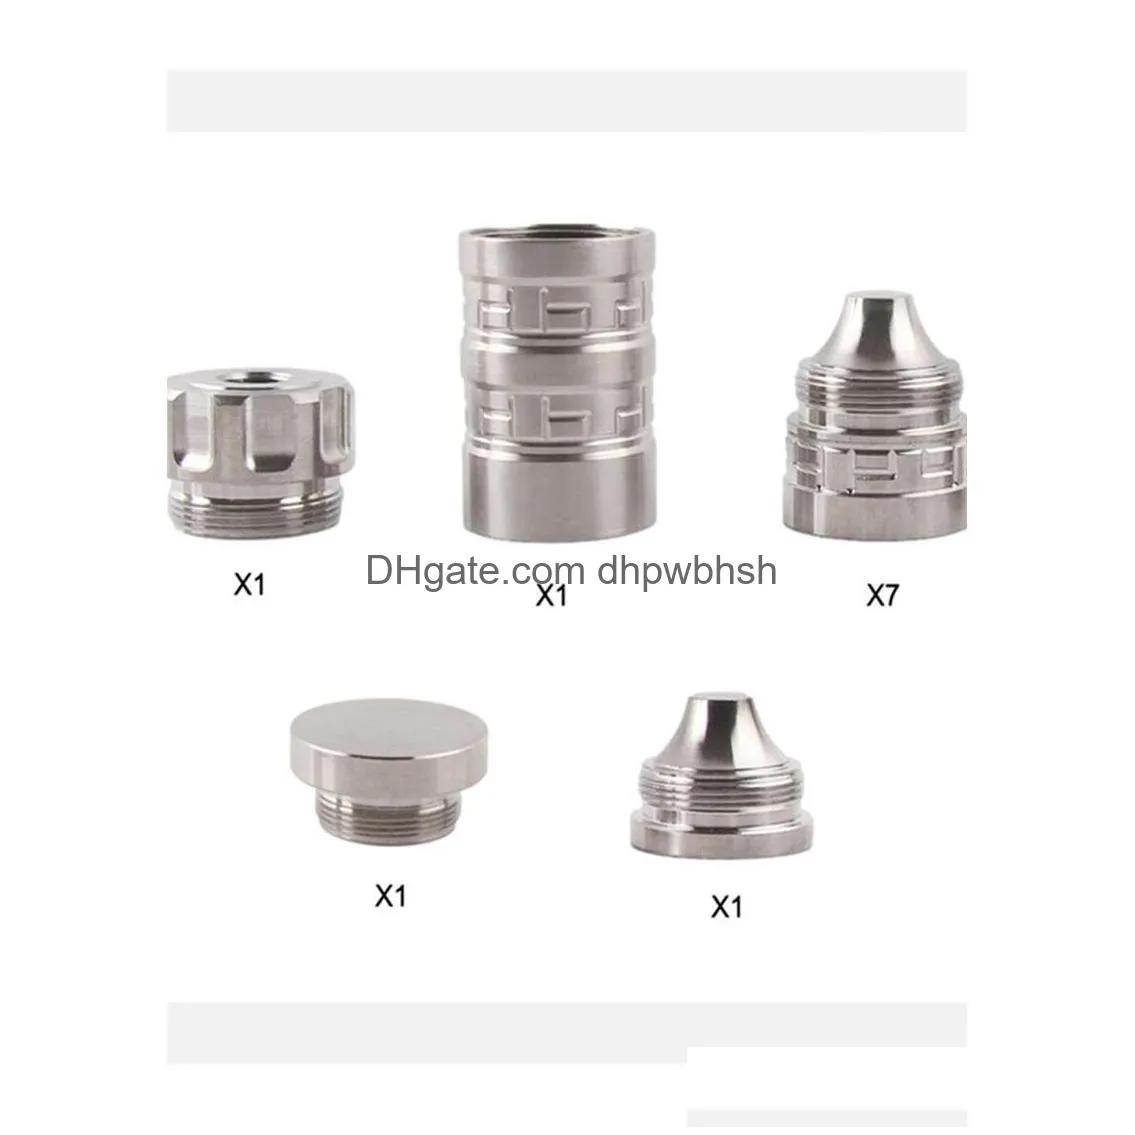 6.7l 1.34od titanium modular screw kits 1.1875x24tpi thread cup 1/2x28 5/8-24 end cap 1-3/16x24 qt154a qt154b